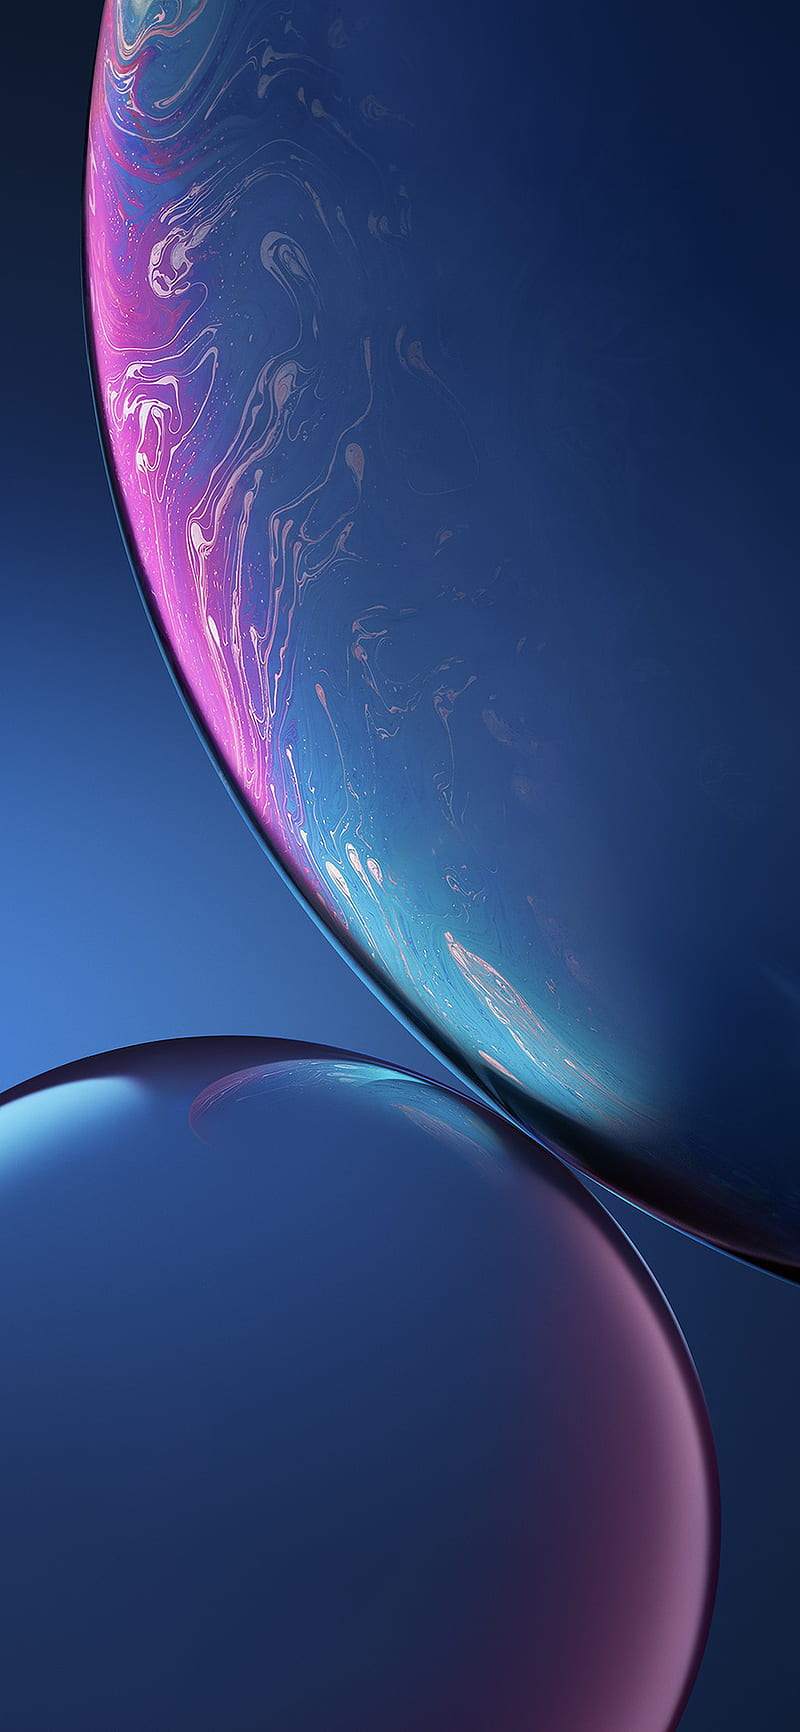 Điện thoại iPhone lúc nào cũng nên được cập nhật với những hình nền mới và độc đáo để tạo điểm nhấn cho màn hình. Hôm nay, hãy thử sức với hình nền iPhone XR, XS, XS Max màu xanh dương đầy ấn tượng. Sắc màu dịu nhẹ và thiết kế tinh tế chắc chắn sẽ khiến bạn mê mẩn.